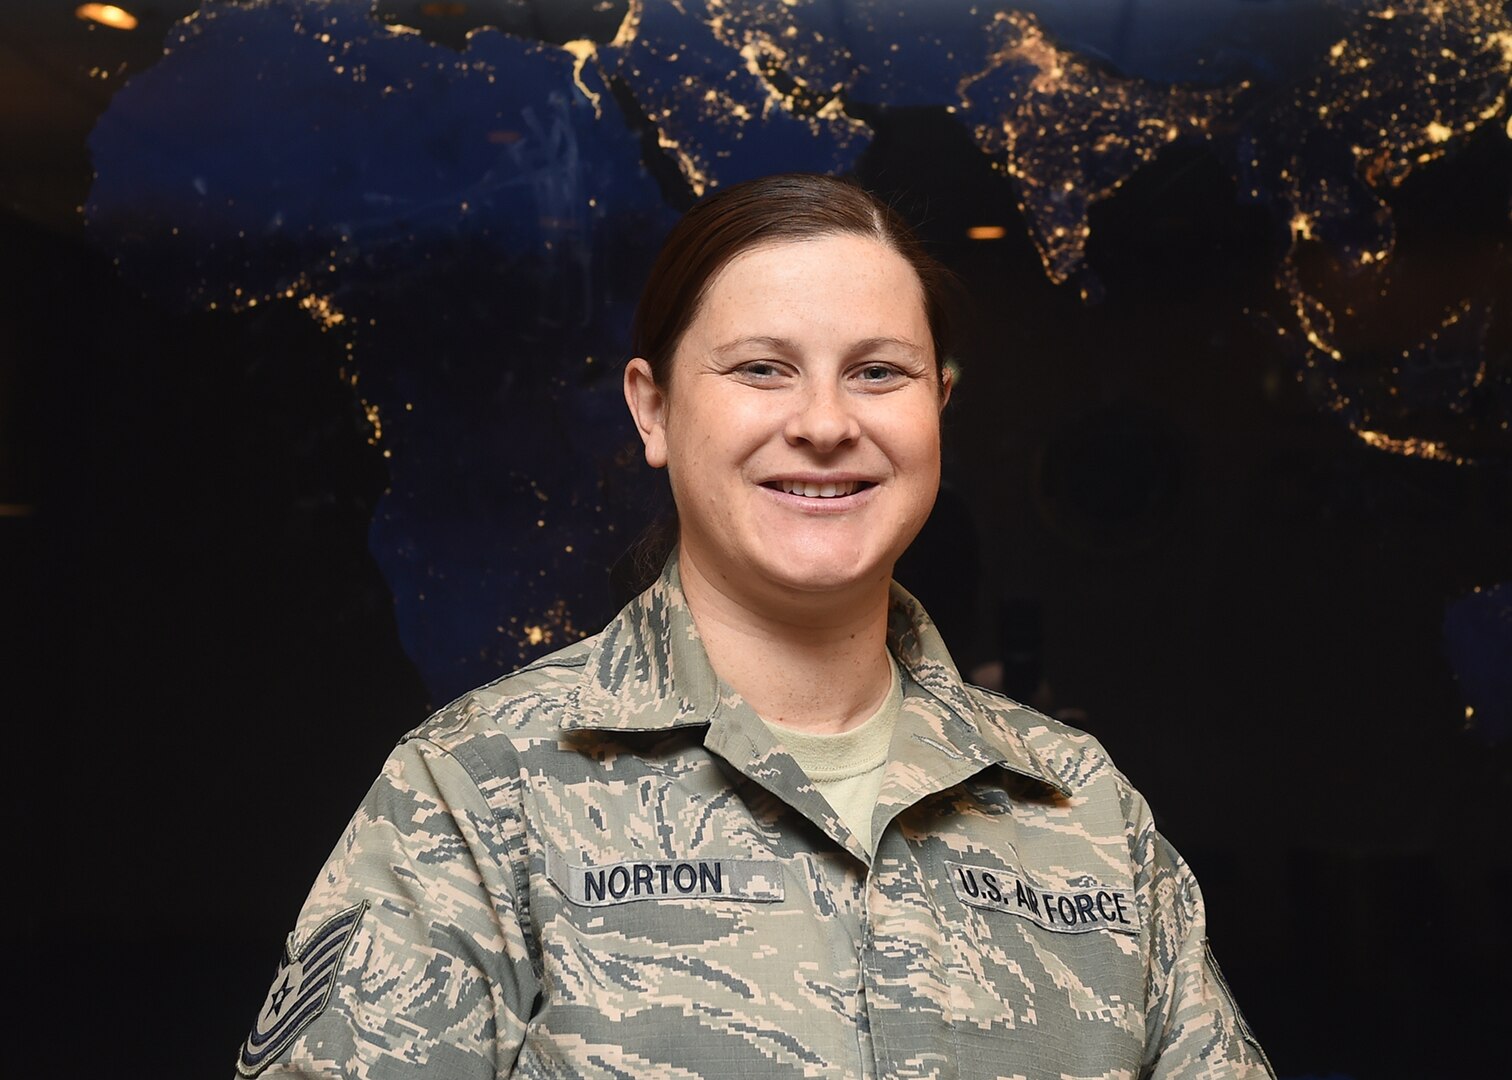 Technical Sgt. Julie Norton